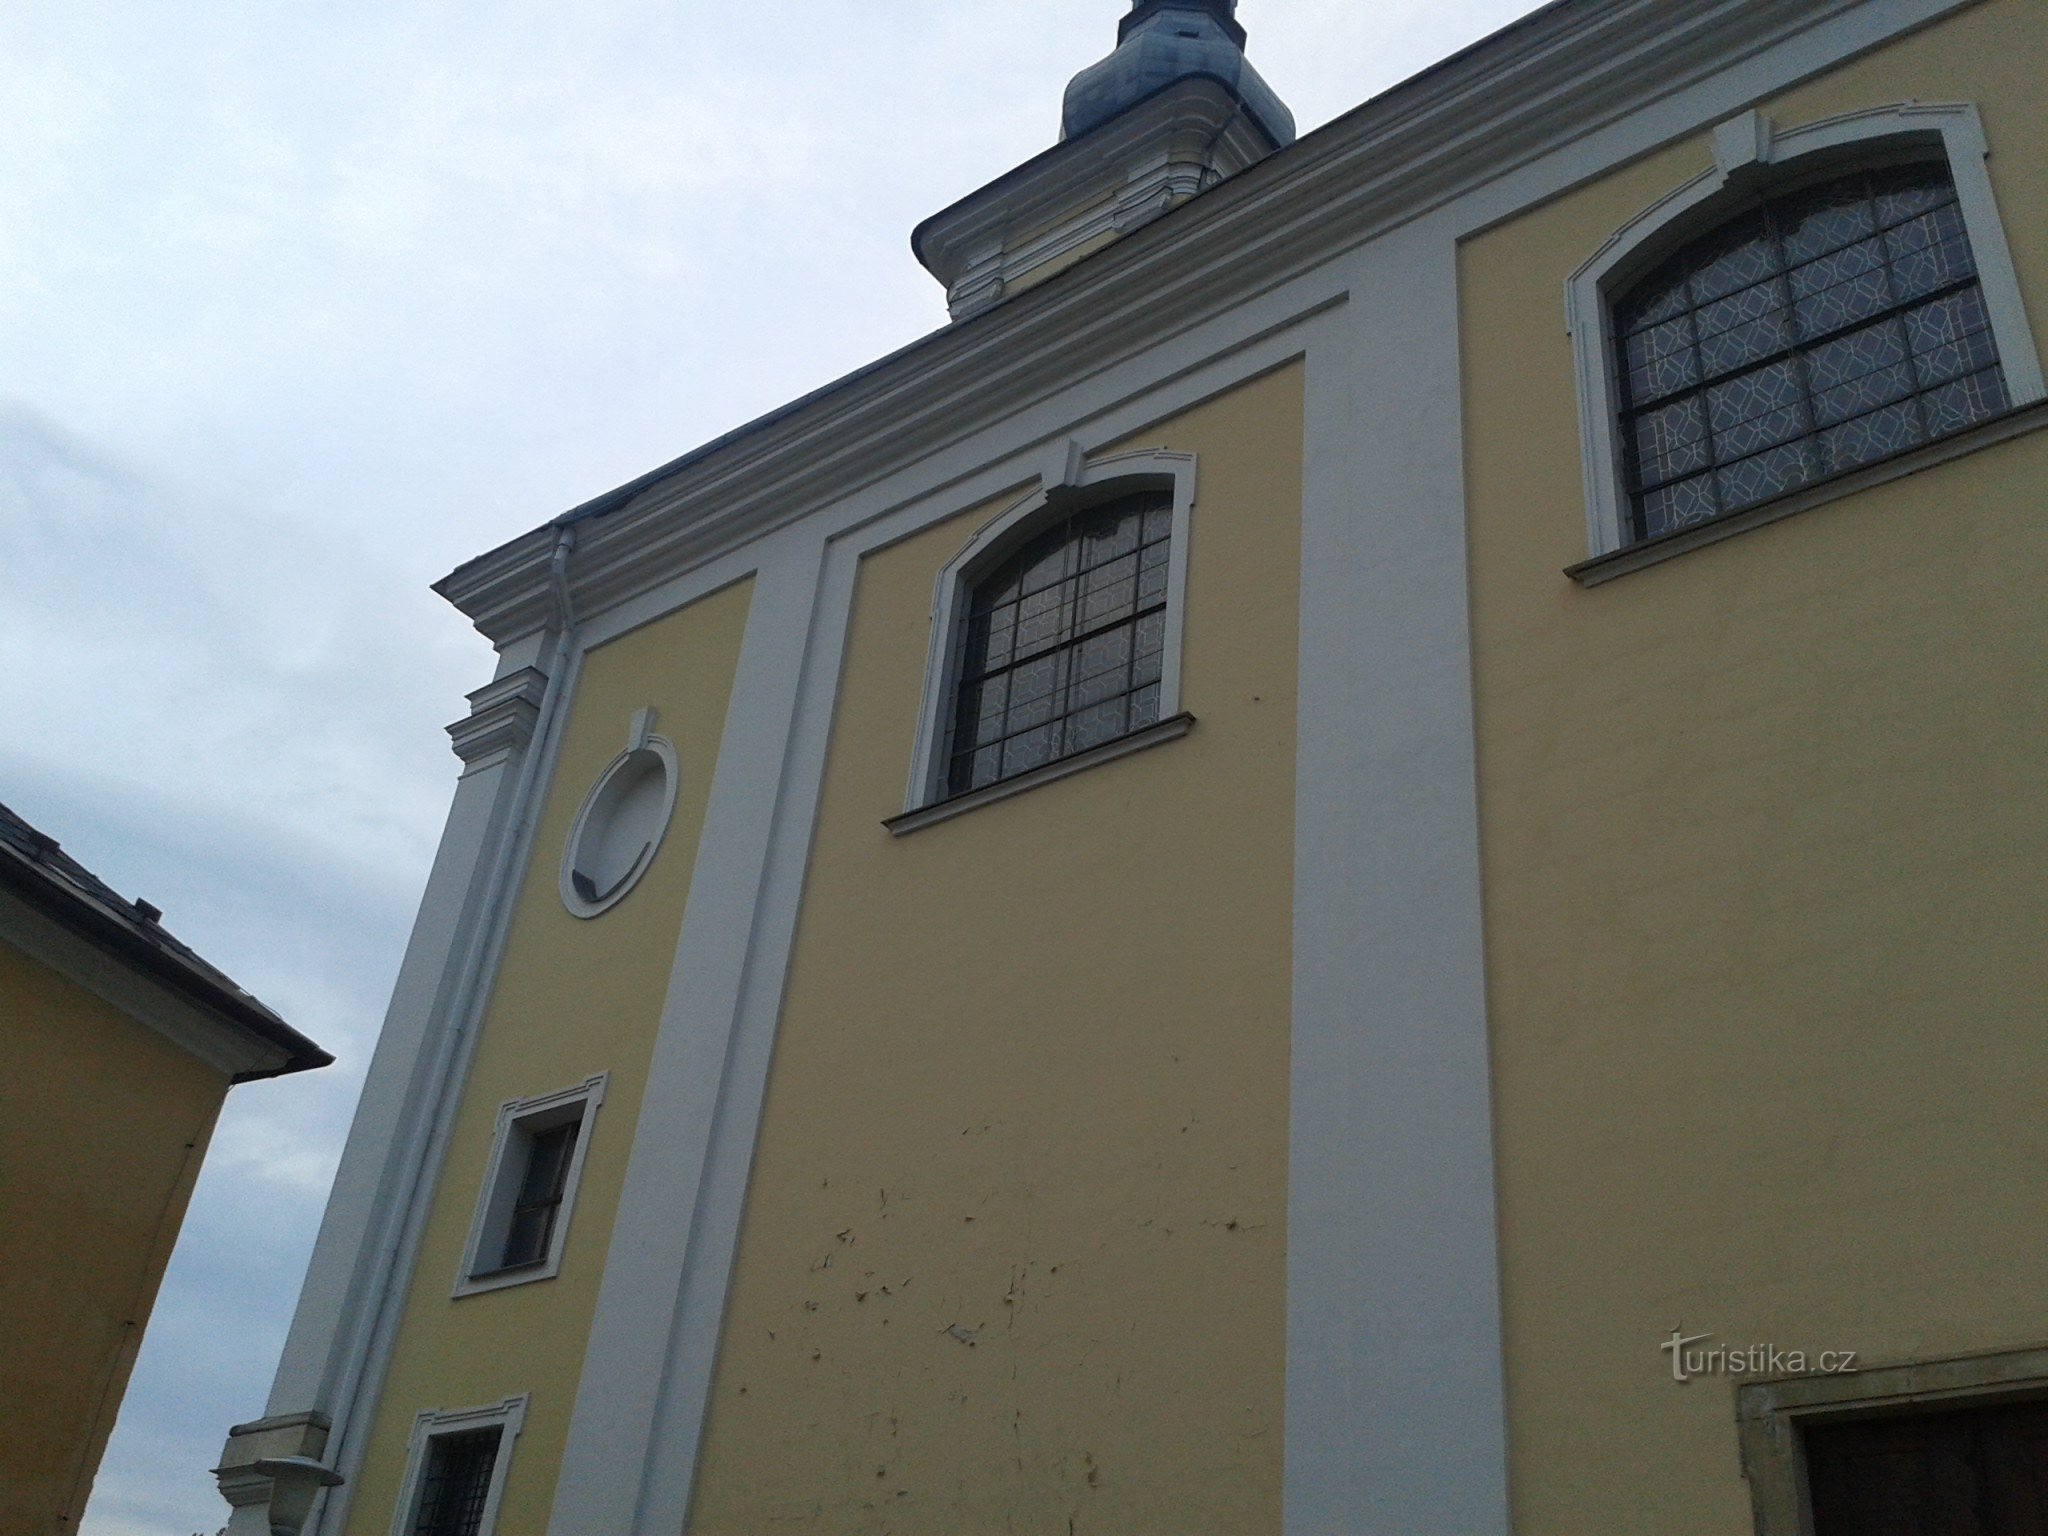 Zábřeh (na Mor.) - Εκκλησία του Αγίου Βαρθολομαίου από έξω και από μέσα (προσθήκη 19.3.16) + ενορία